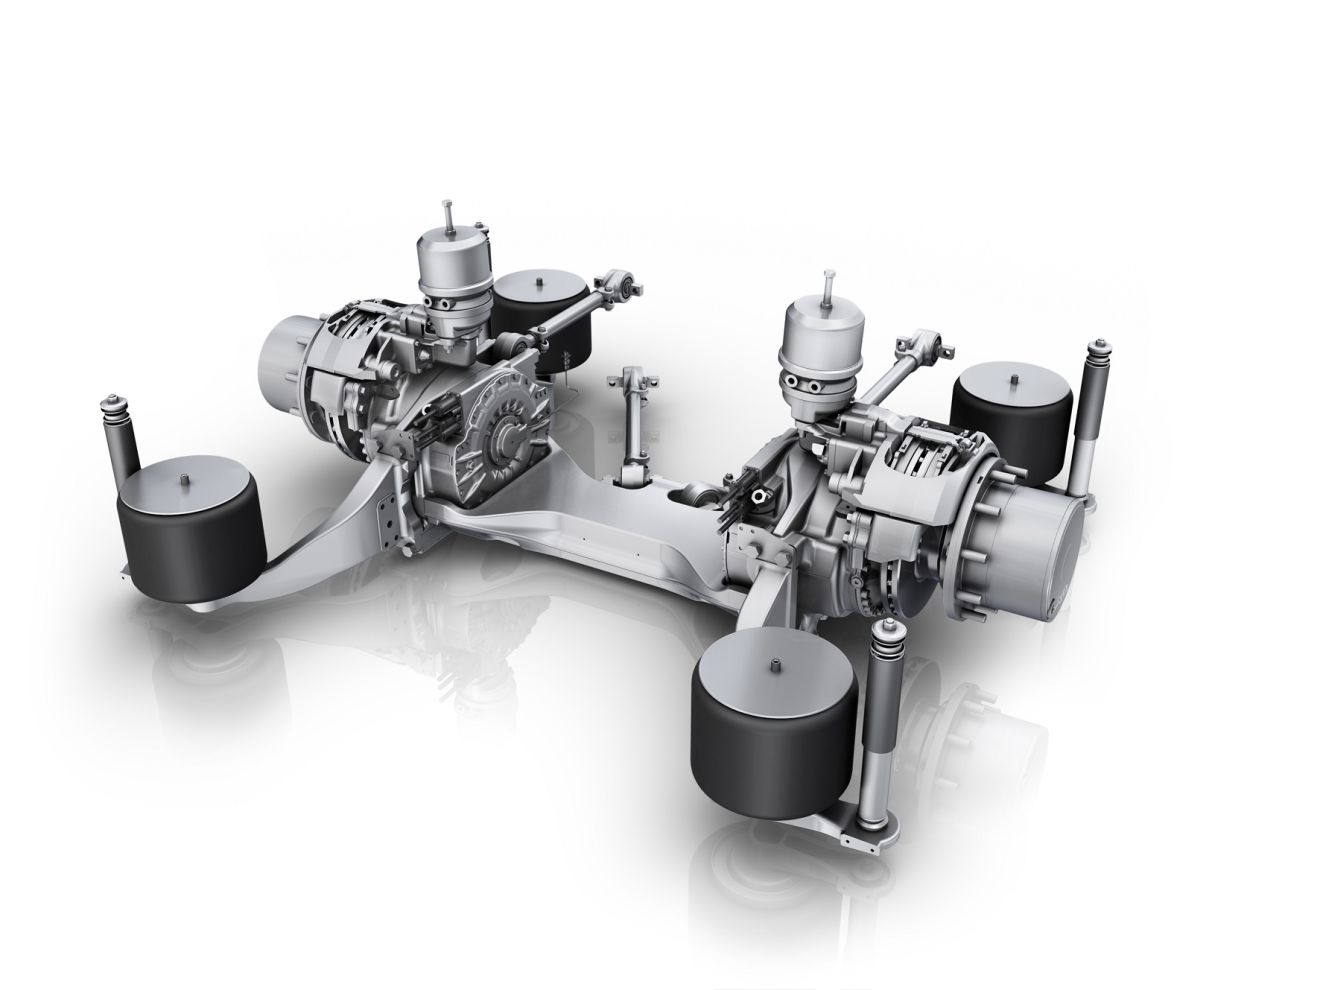 Ο άξονας AxTrax AVE της ZF πρωτοεμφανίστηκε το 2012. Διαθέτει συμπαγή σχεδίαση, δέχεται ηλεκτροκινητήρες απόδοσης ως και 340 ίππων (250 kW) και υποστηρίζει μέγιστο φορτίο άξονα μέχρι και 13 τόνων.